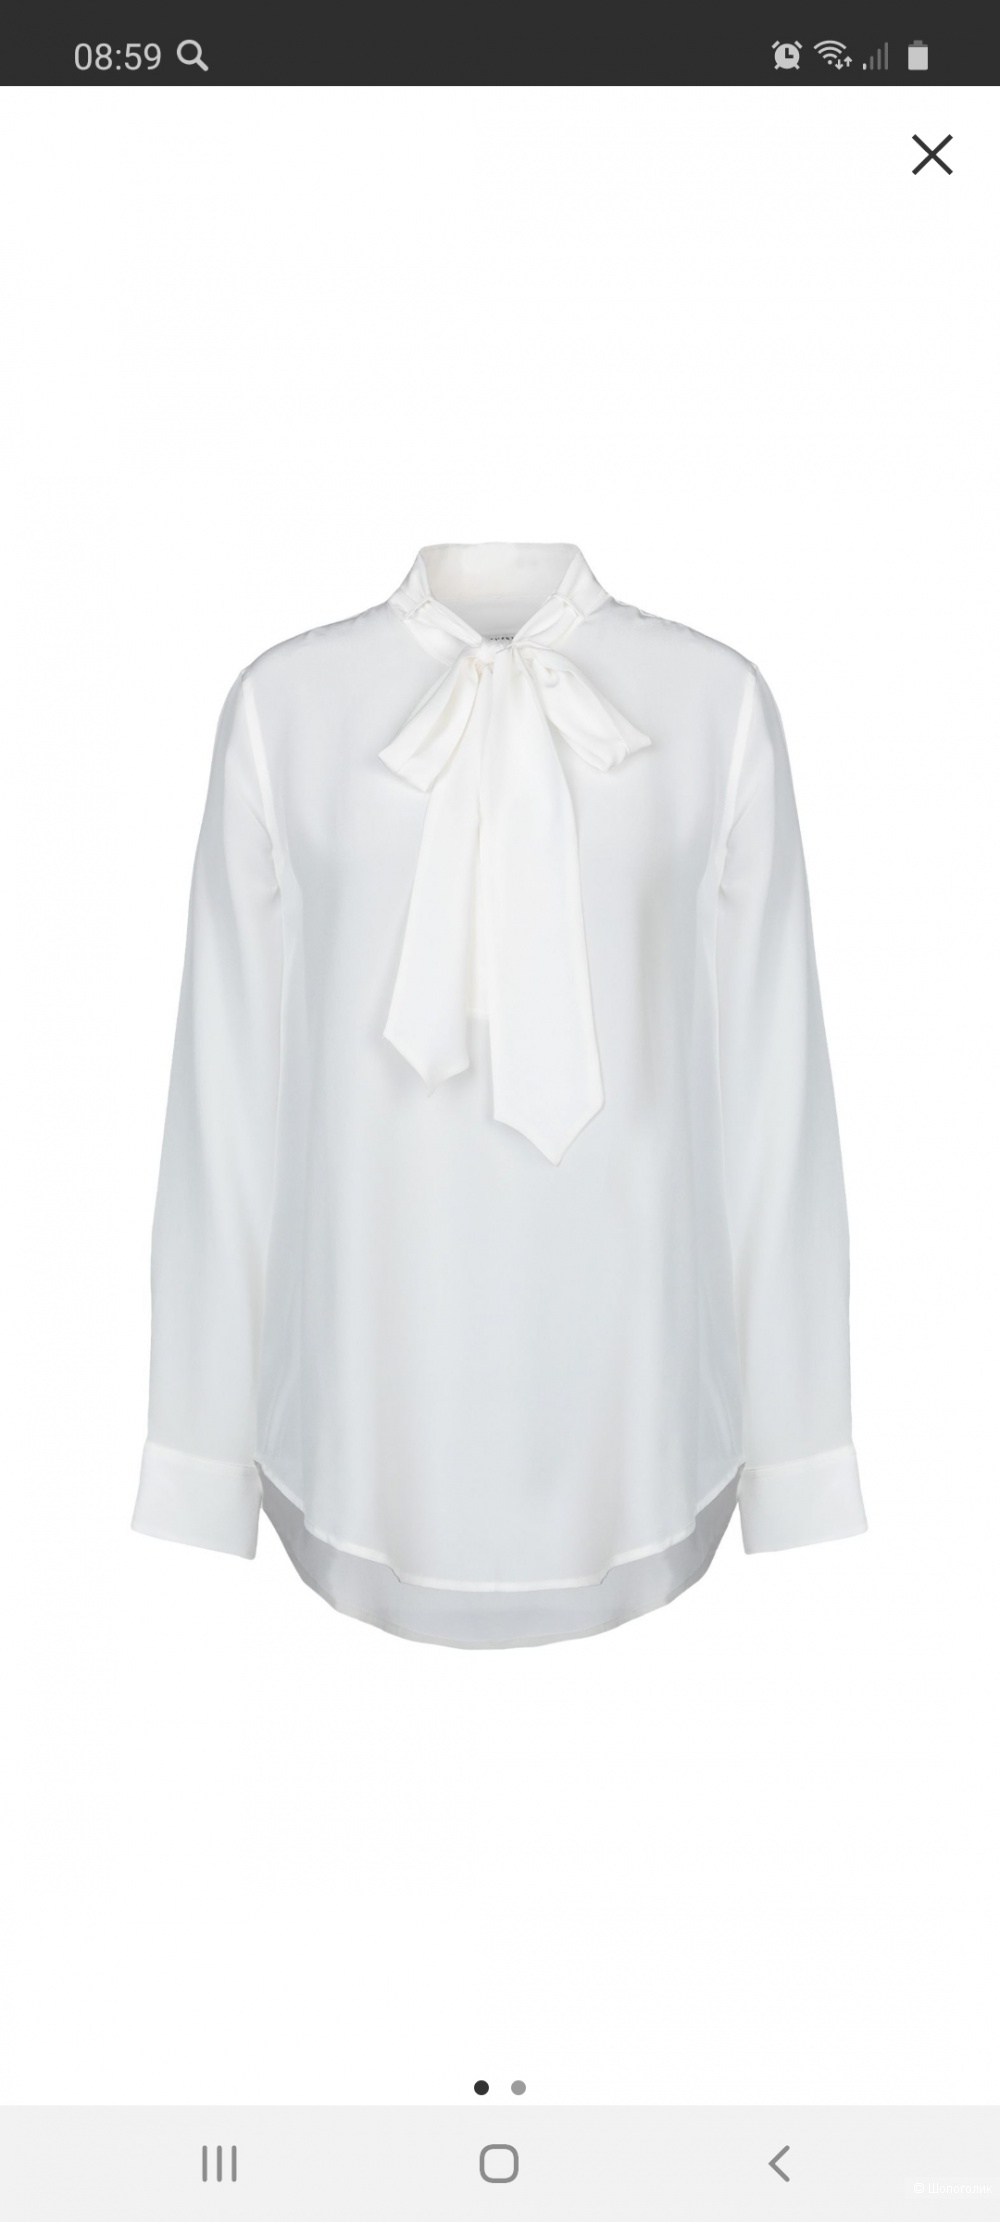 Блуза EQUIPMENT размер M, L